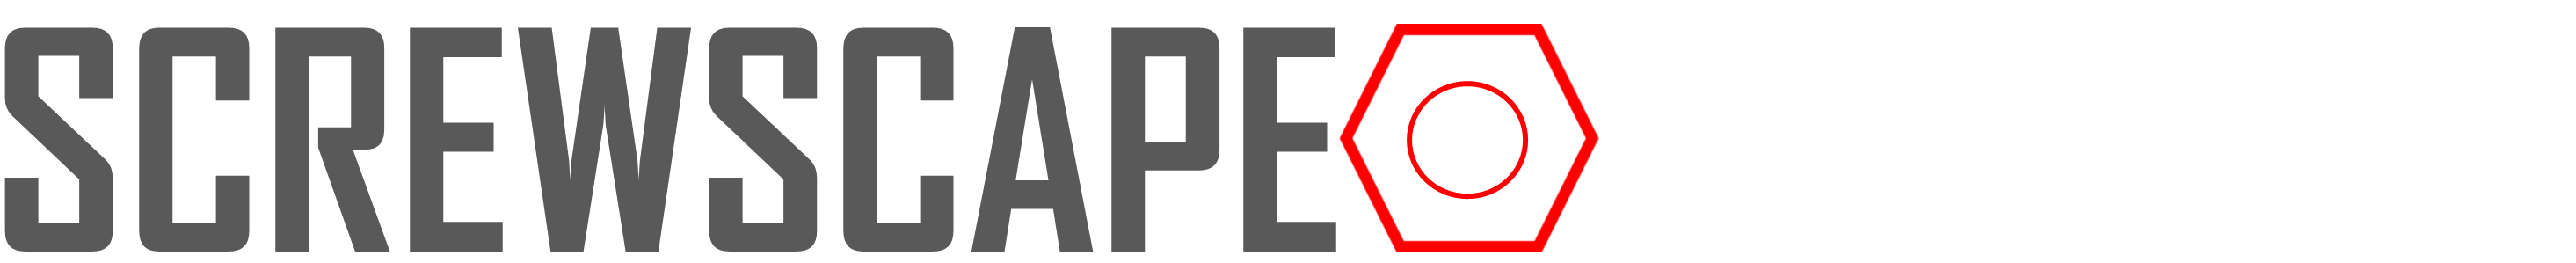 Screwscape-Logo